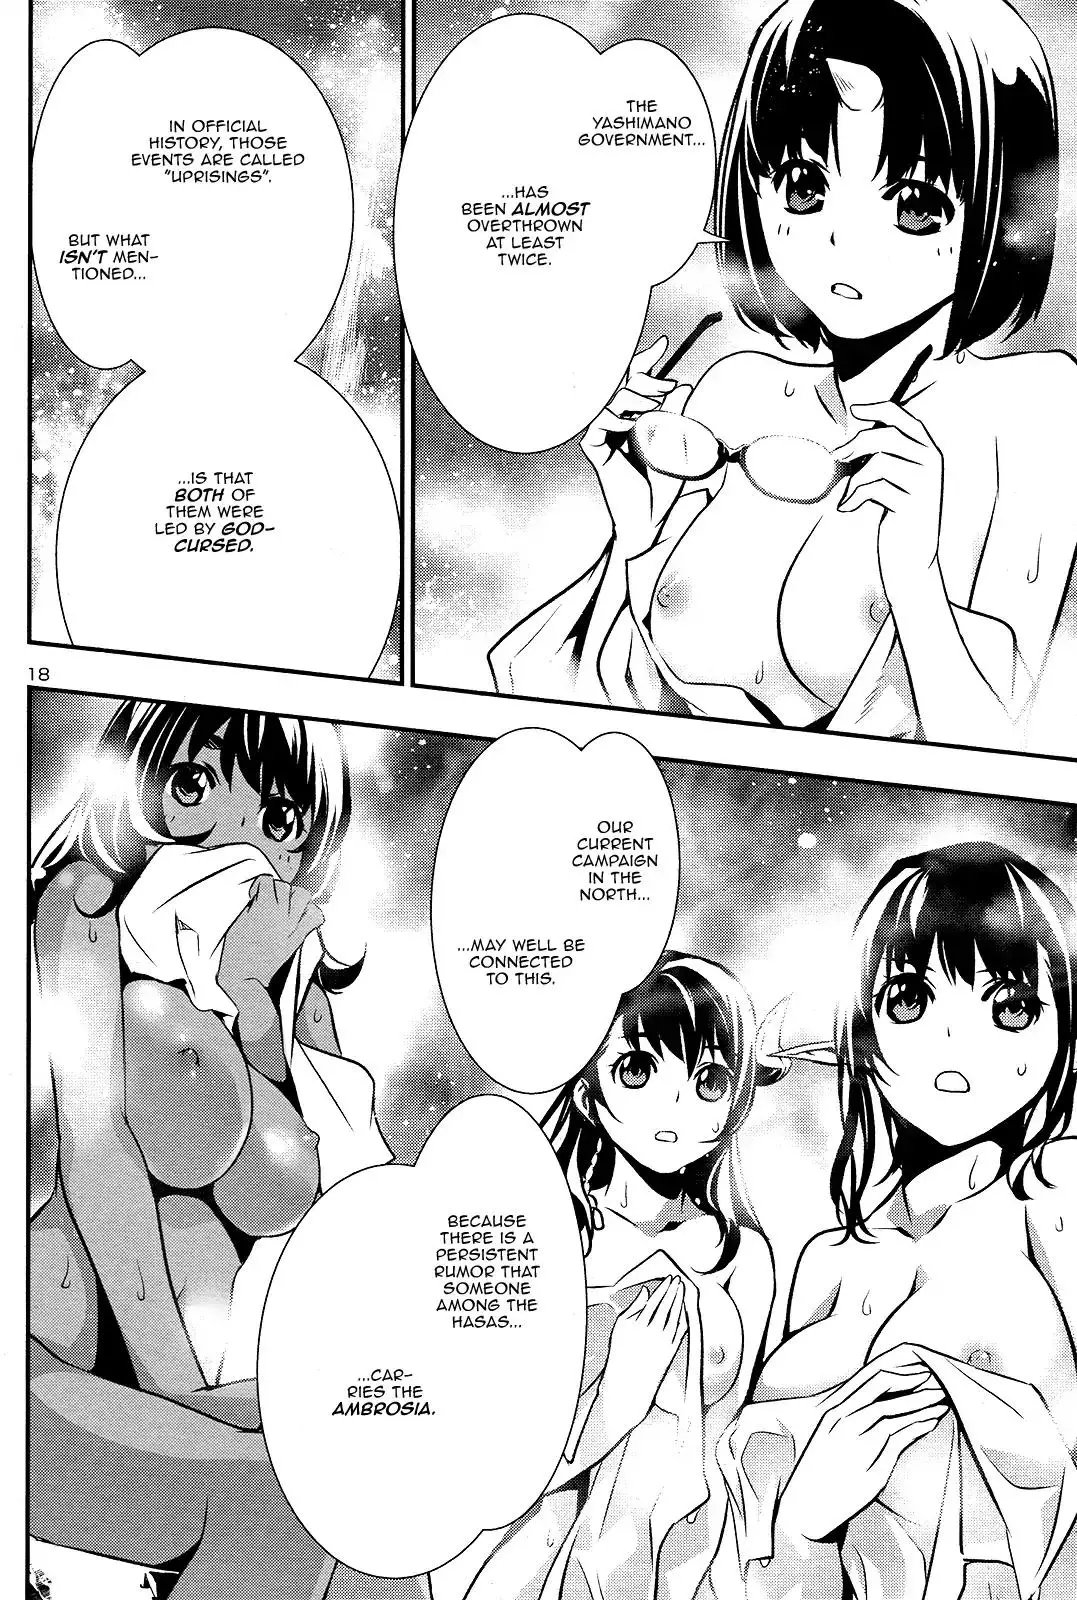 Shinju no Nectar - 24 page 17